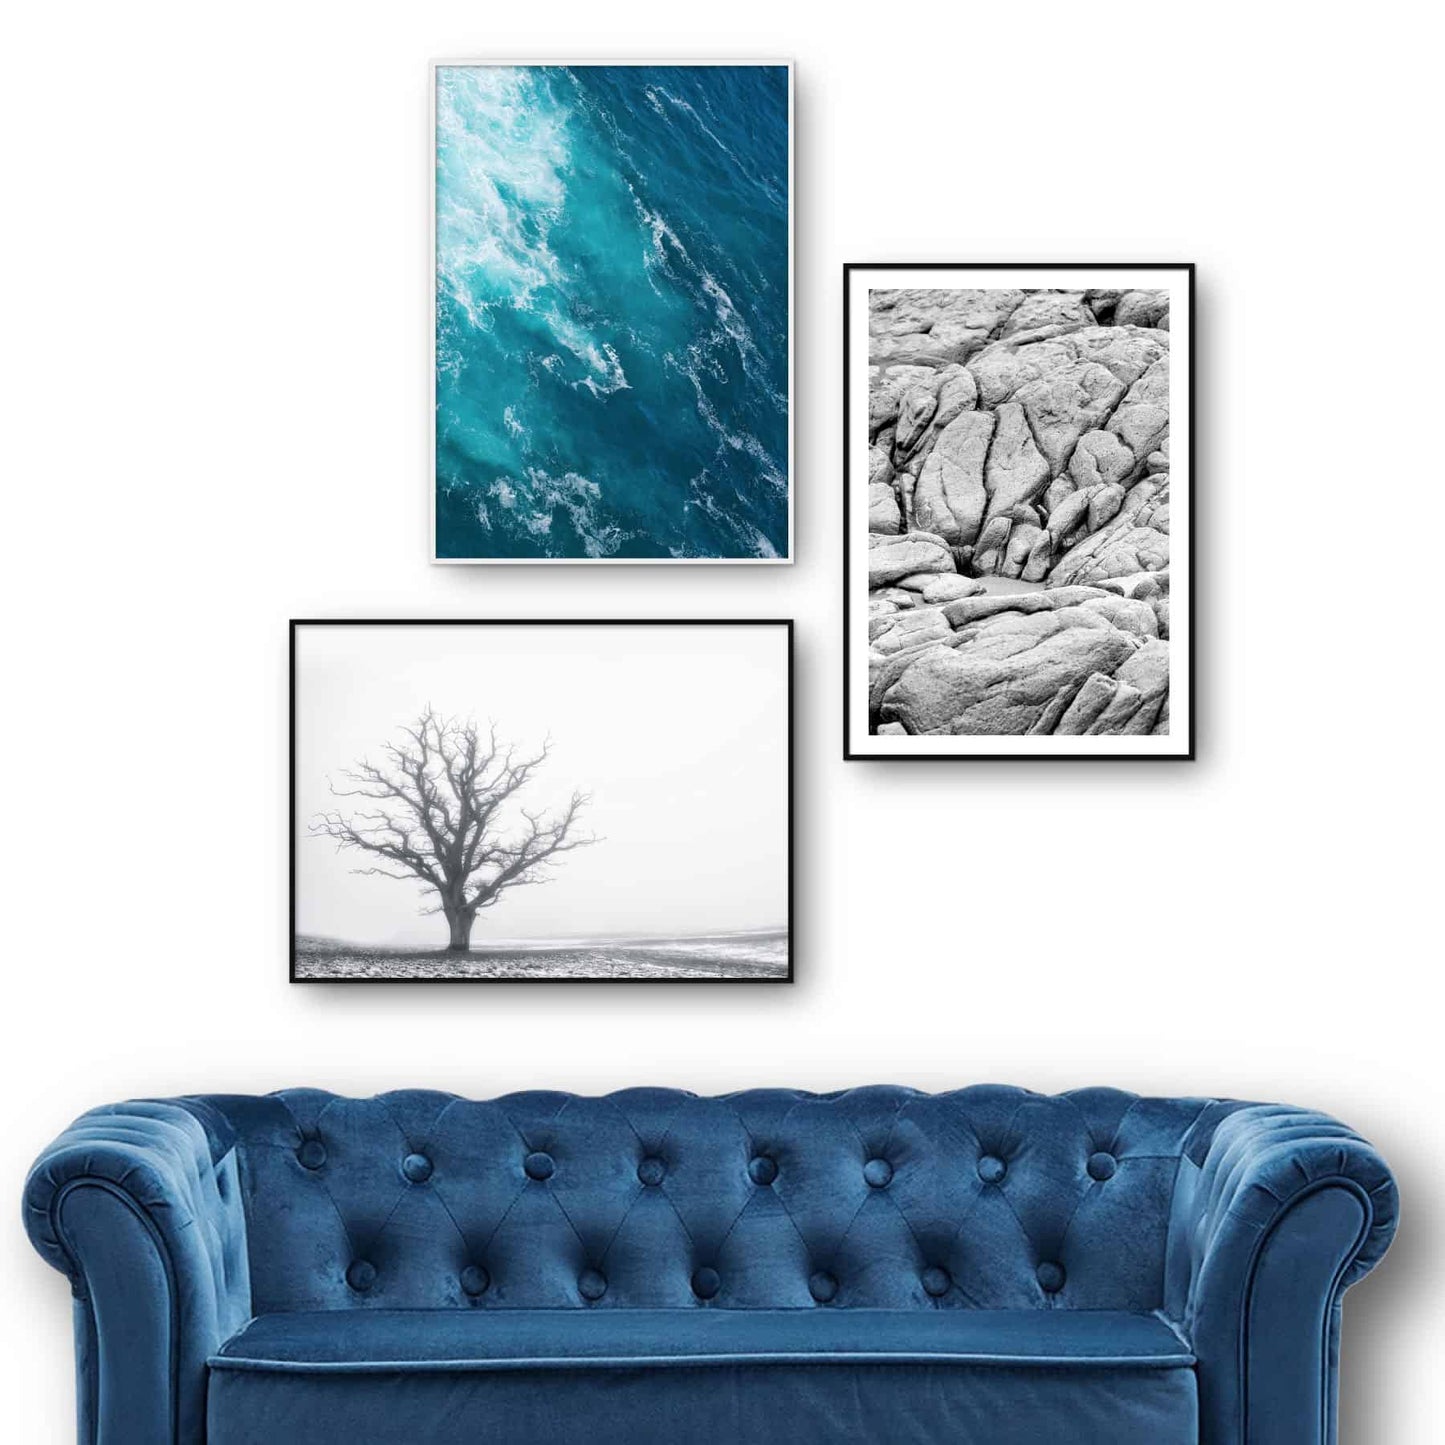 billedvæg med tre naturplakater i sort-hvid og blå farver